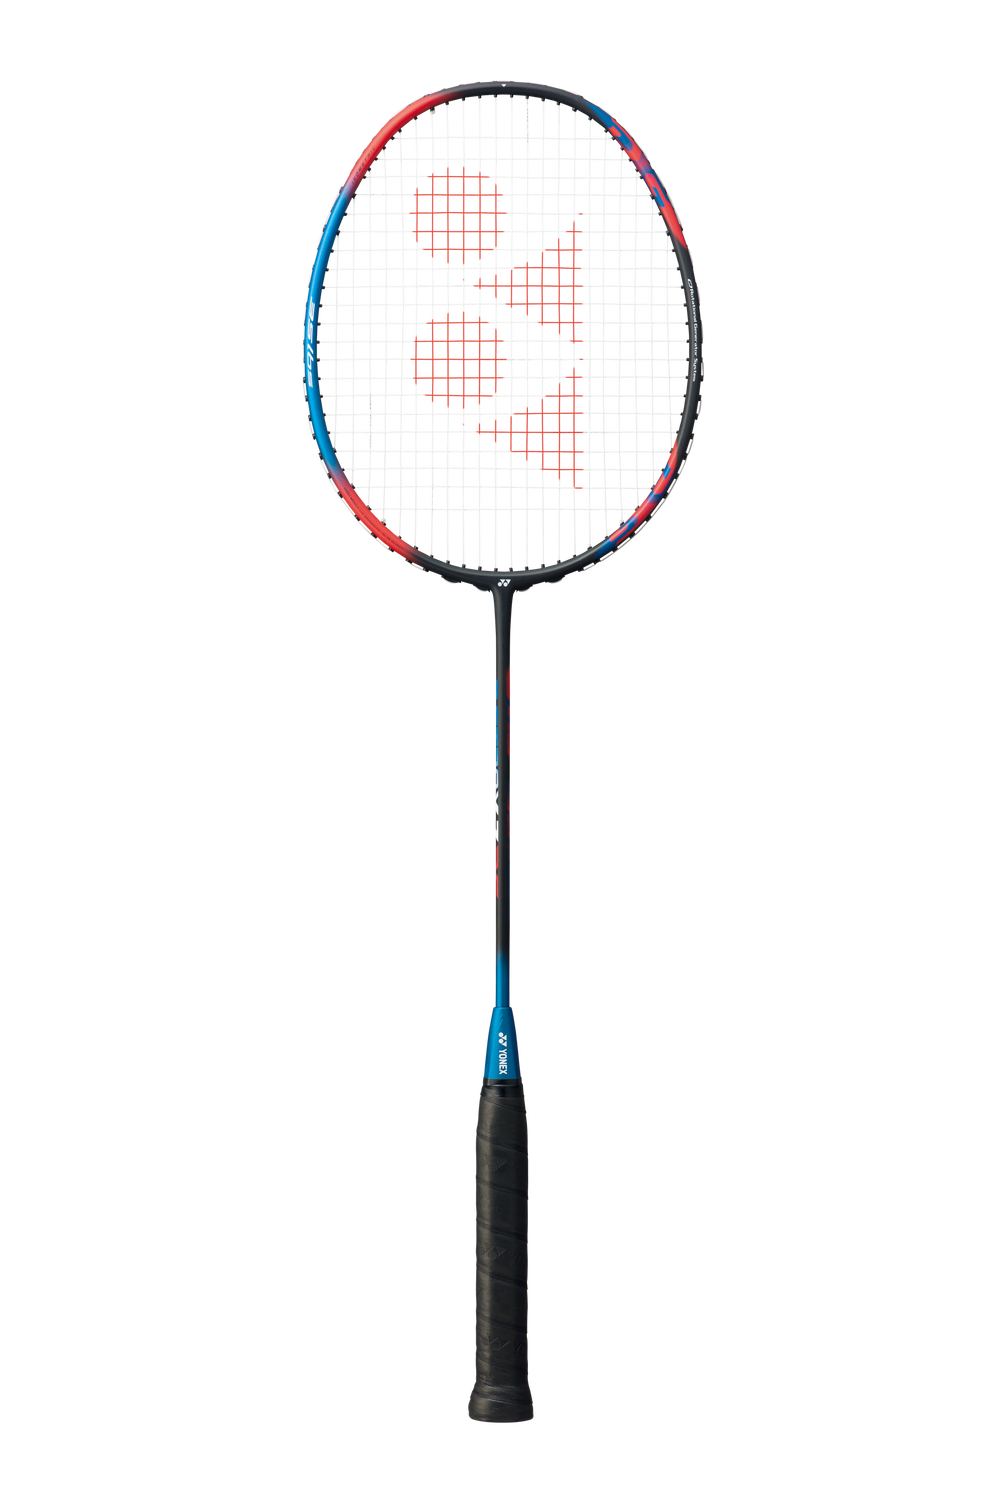 Astrox 7 DG Yonex Badminton Racket